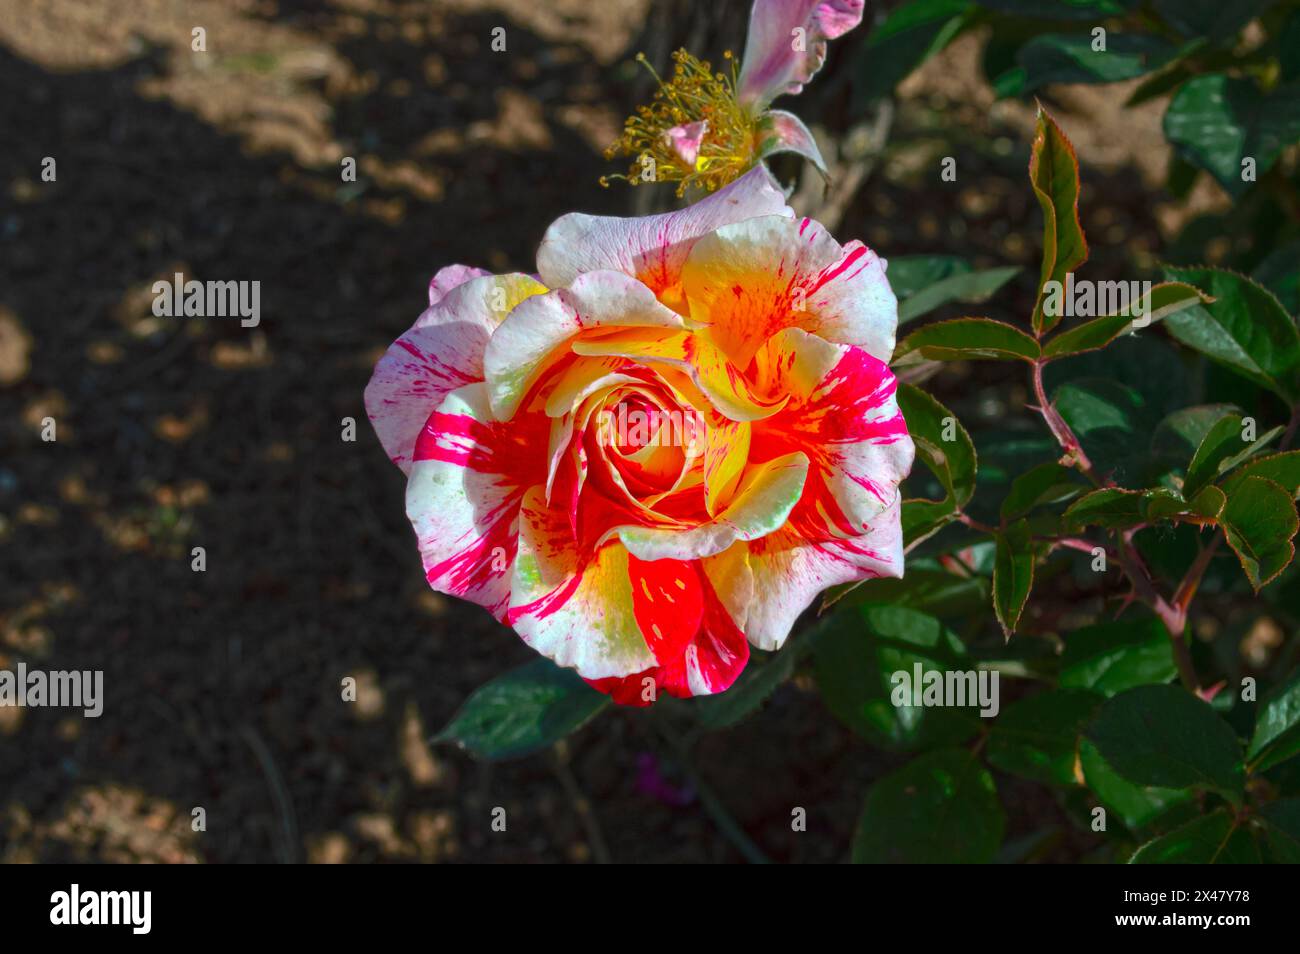 Roses, garden flowers in spring Stock Photo